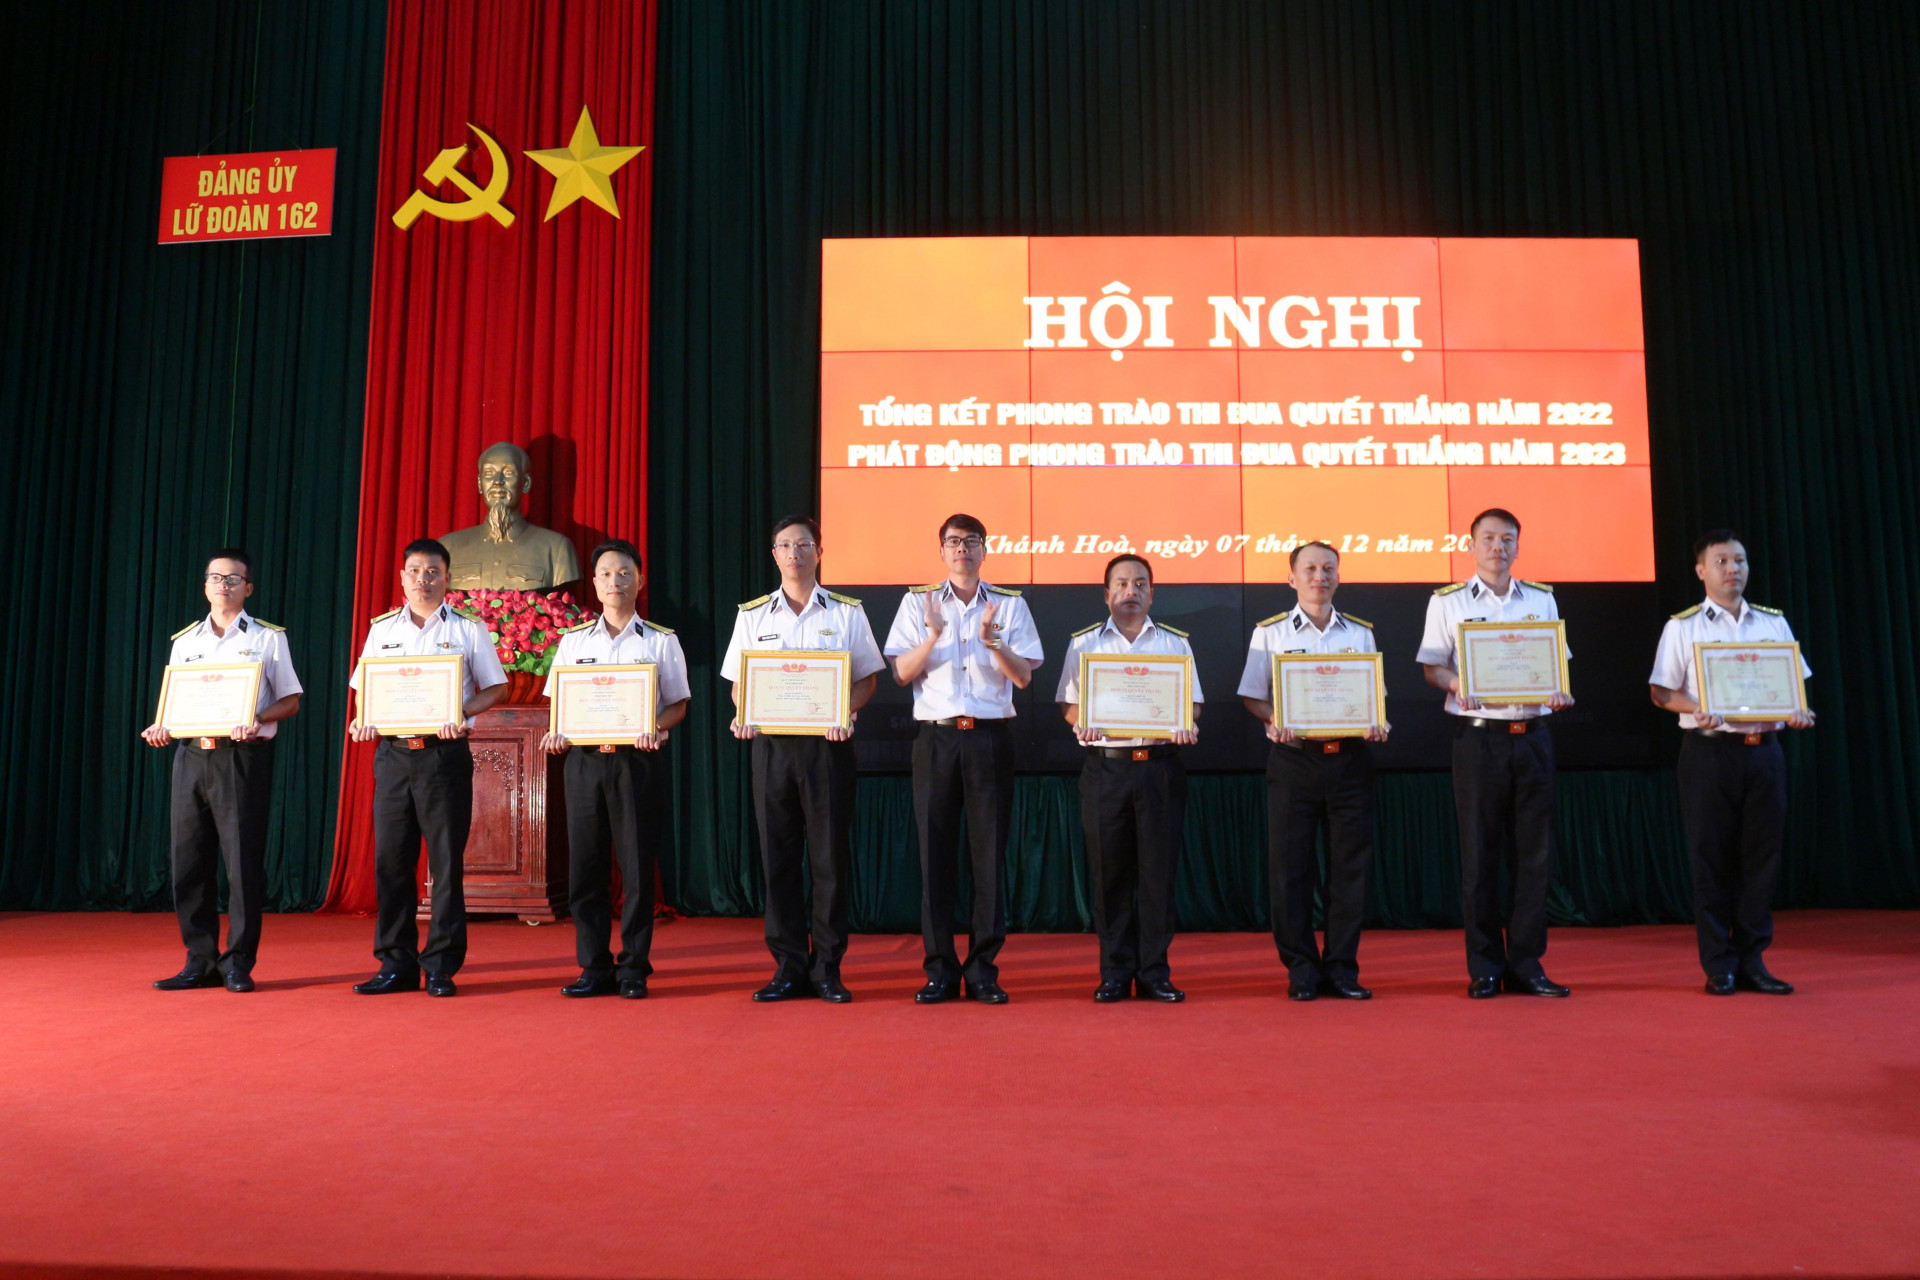 Thủ trưởng Lữ đoàn 162 khen thưởng các đơn vị trong lữ đoàn có thành tích xuất sắc